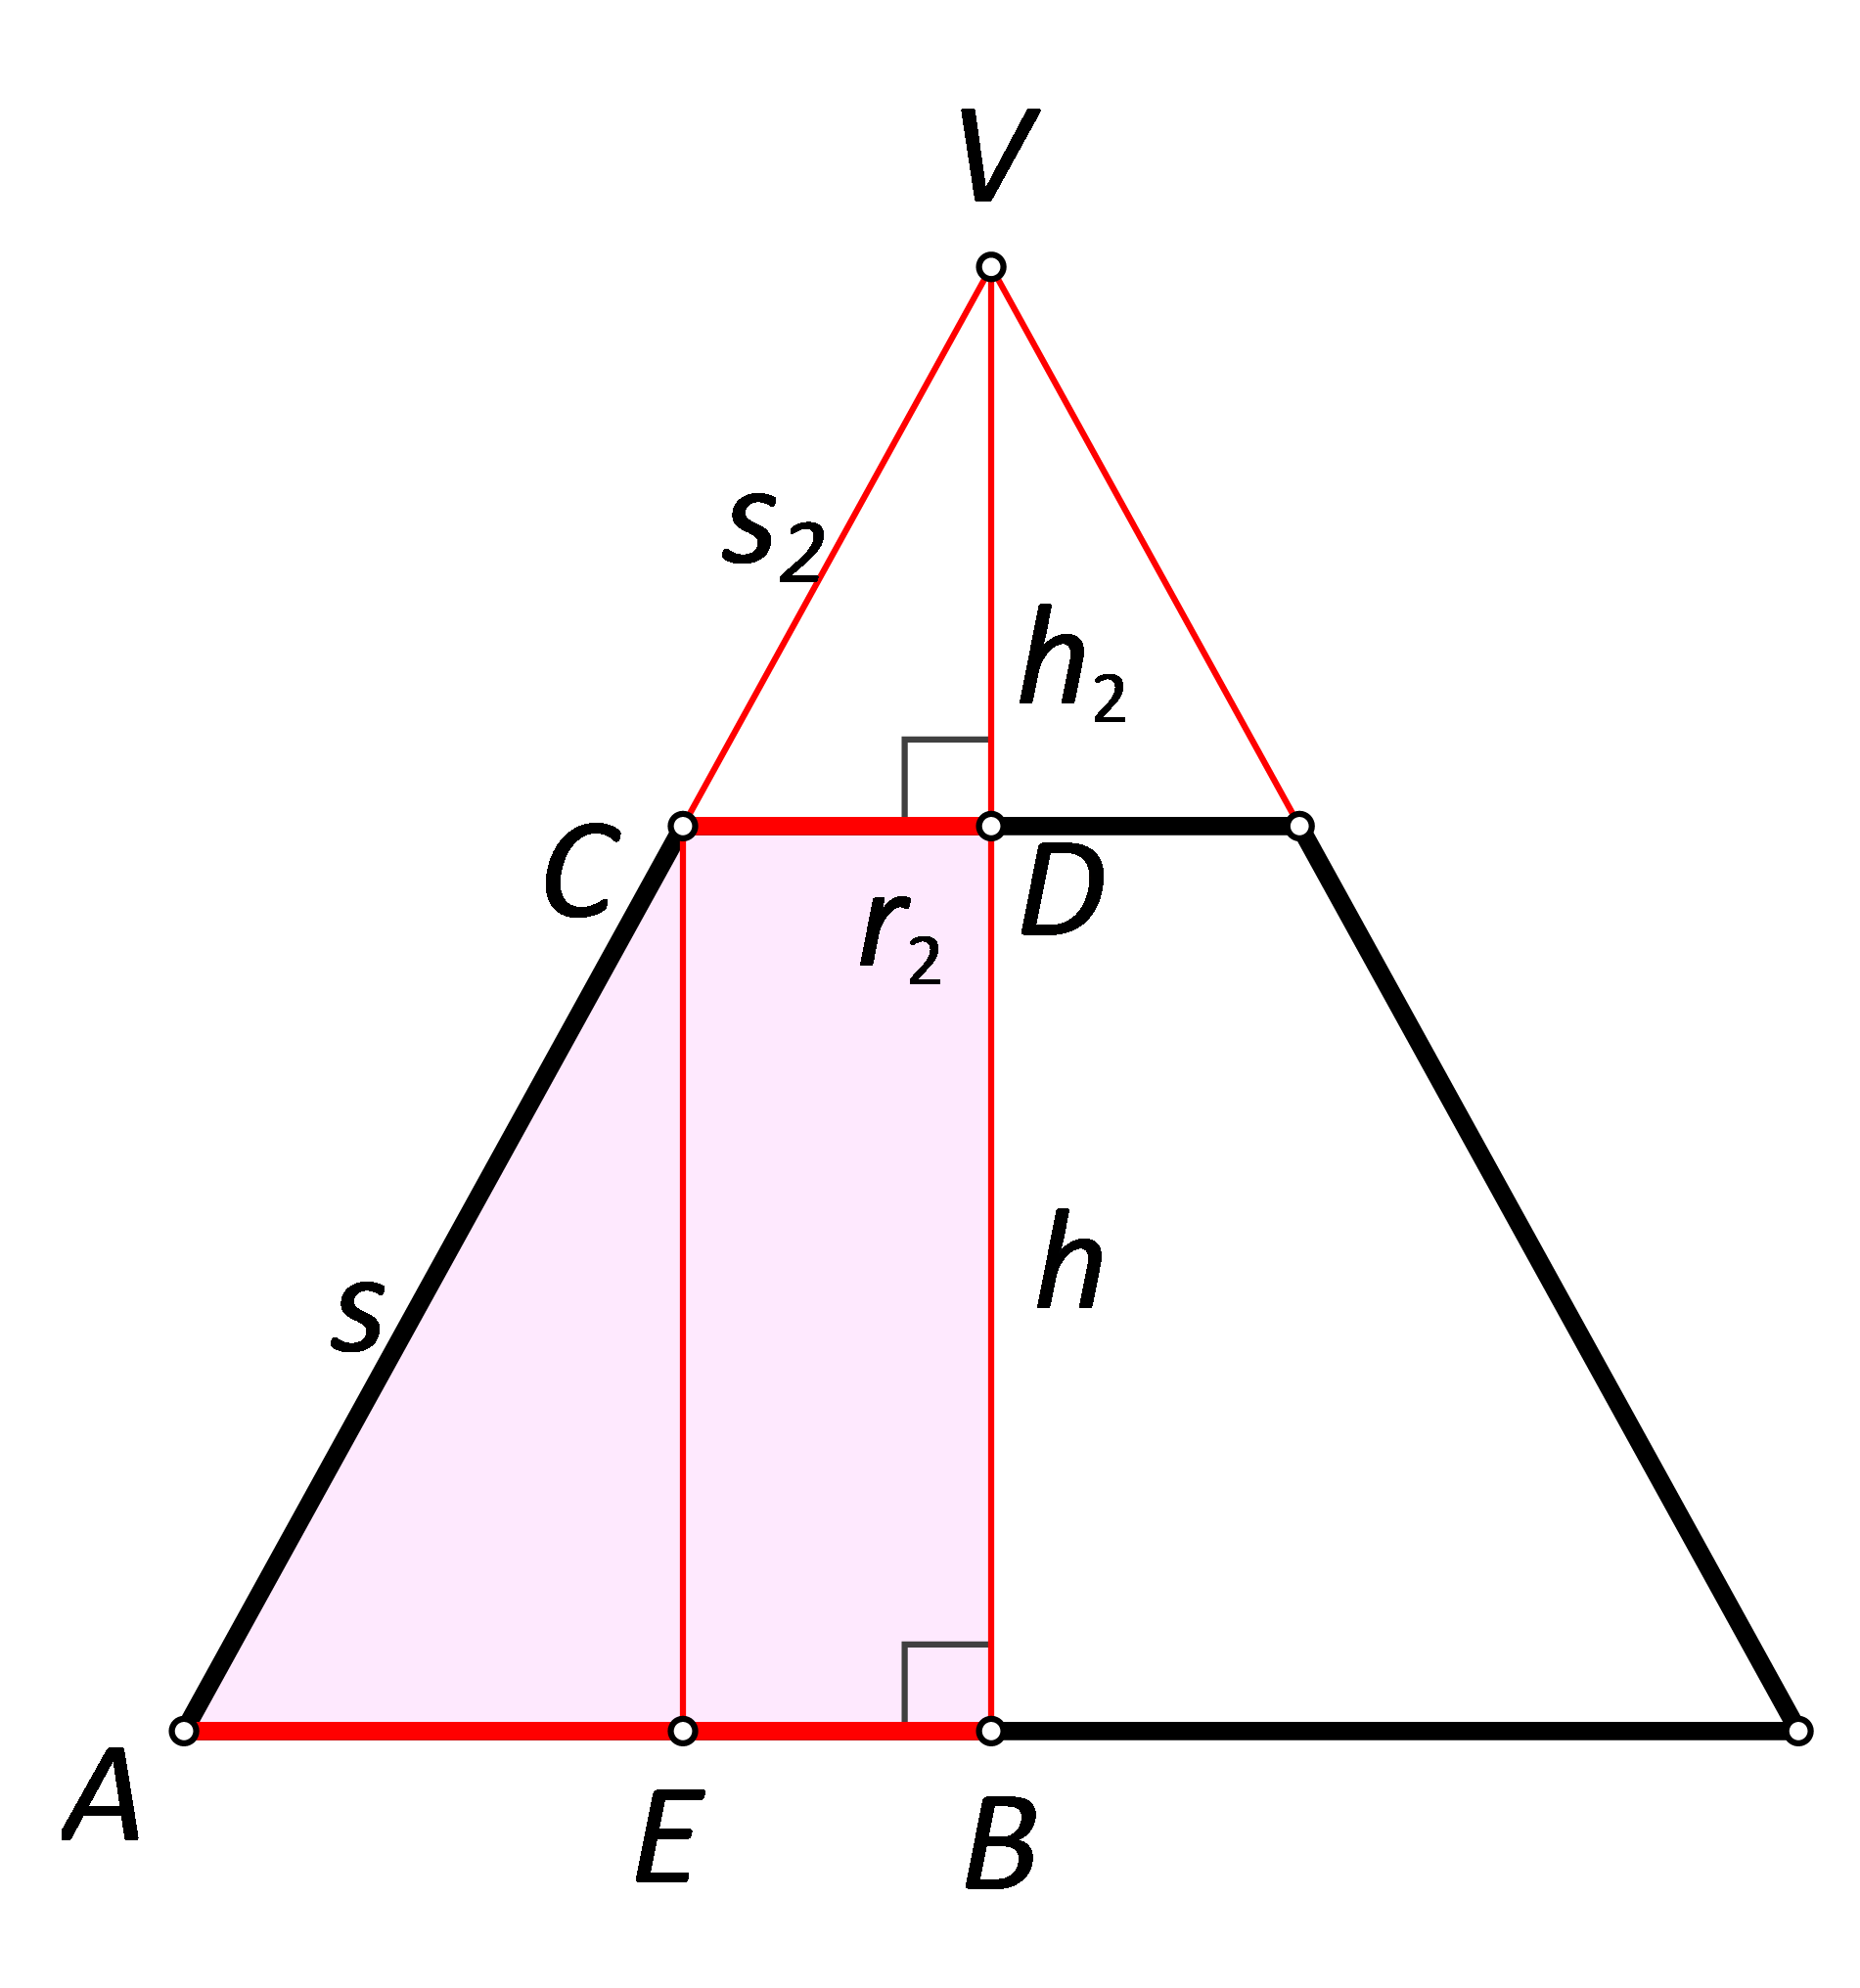 Slika prikazuje slične trokute u krnjem stošcu.